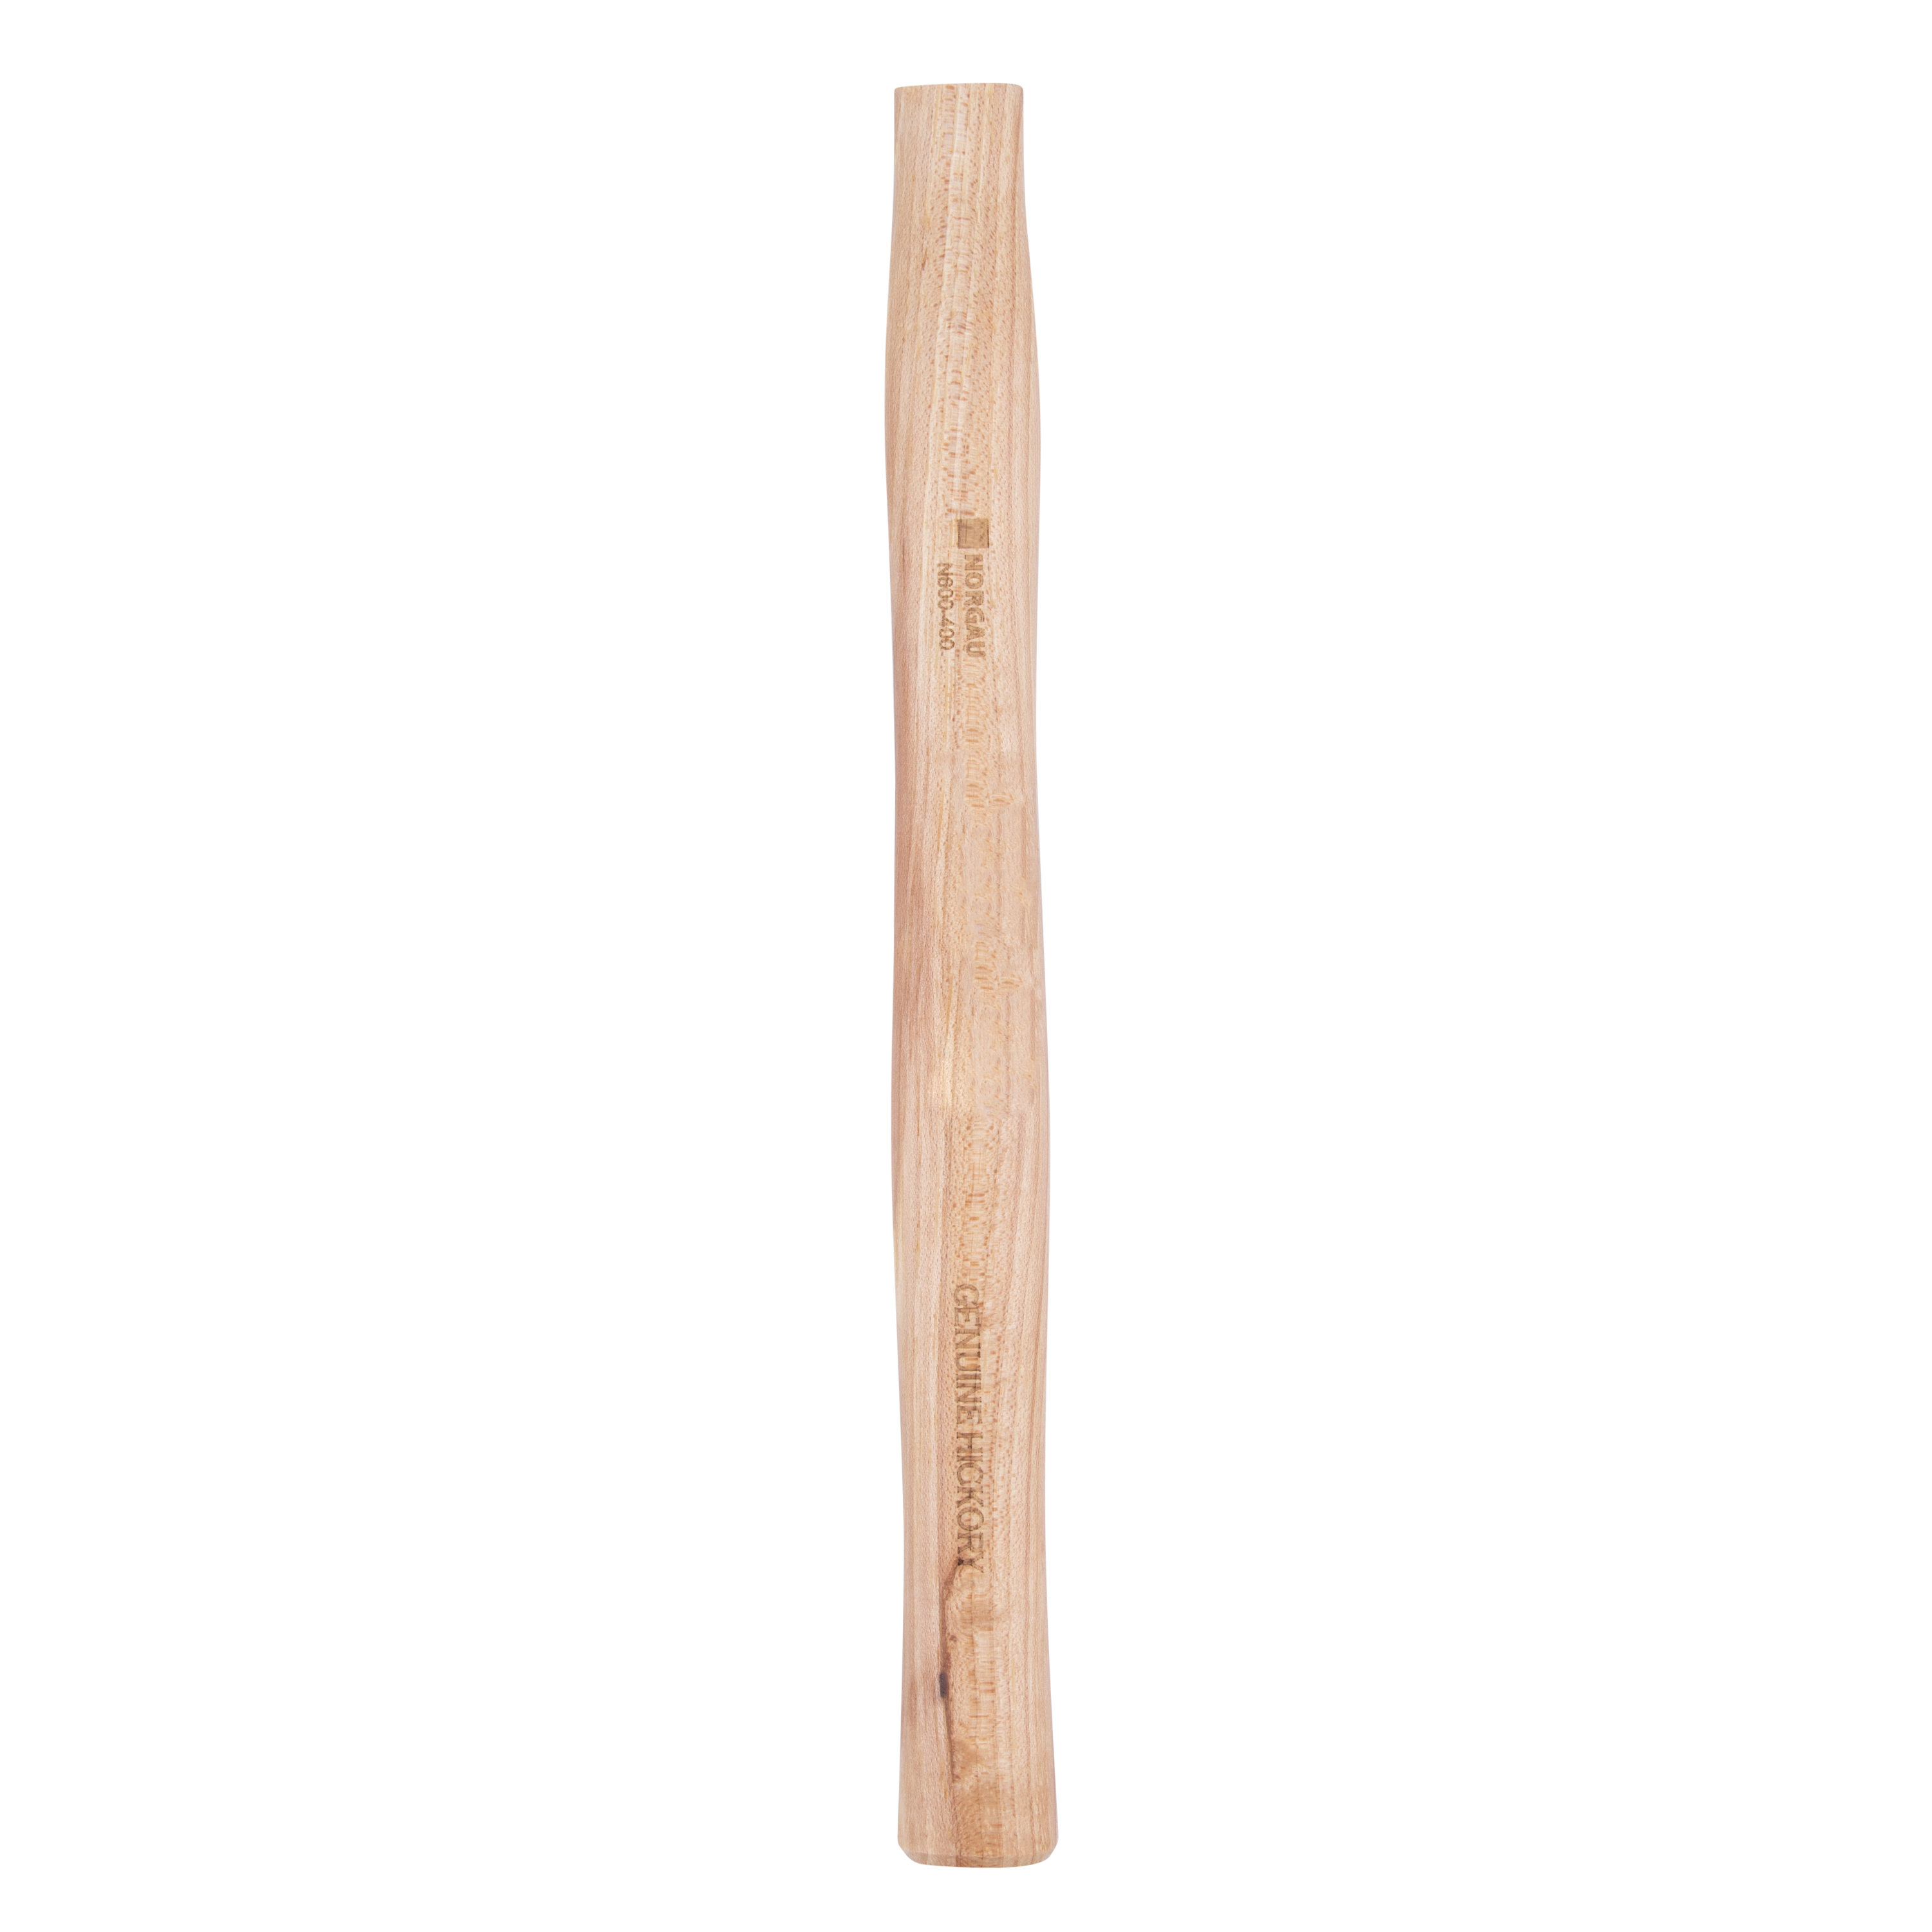 Рукоятка NORGAU Industrial запаснаядля молотка 400 г, из древесины гикори, 300 мм рукоятка высший сорт 400 мм для молотка ооо агростройлидер 82